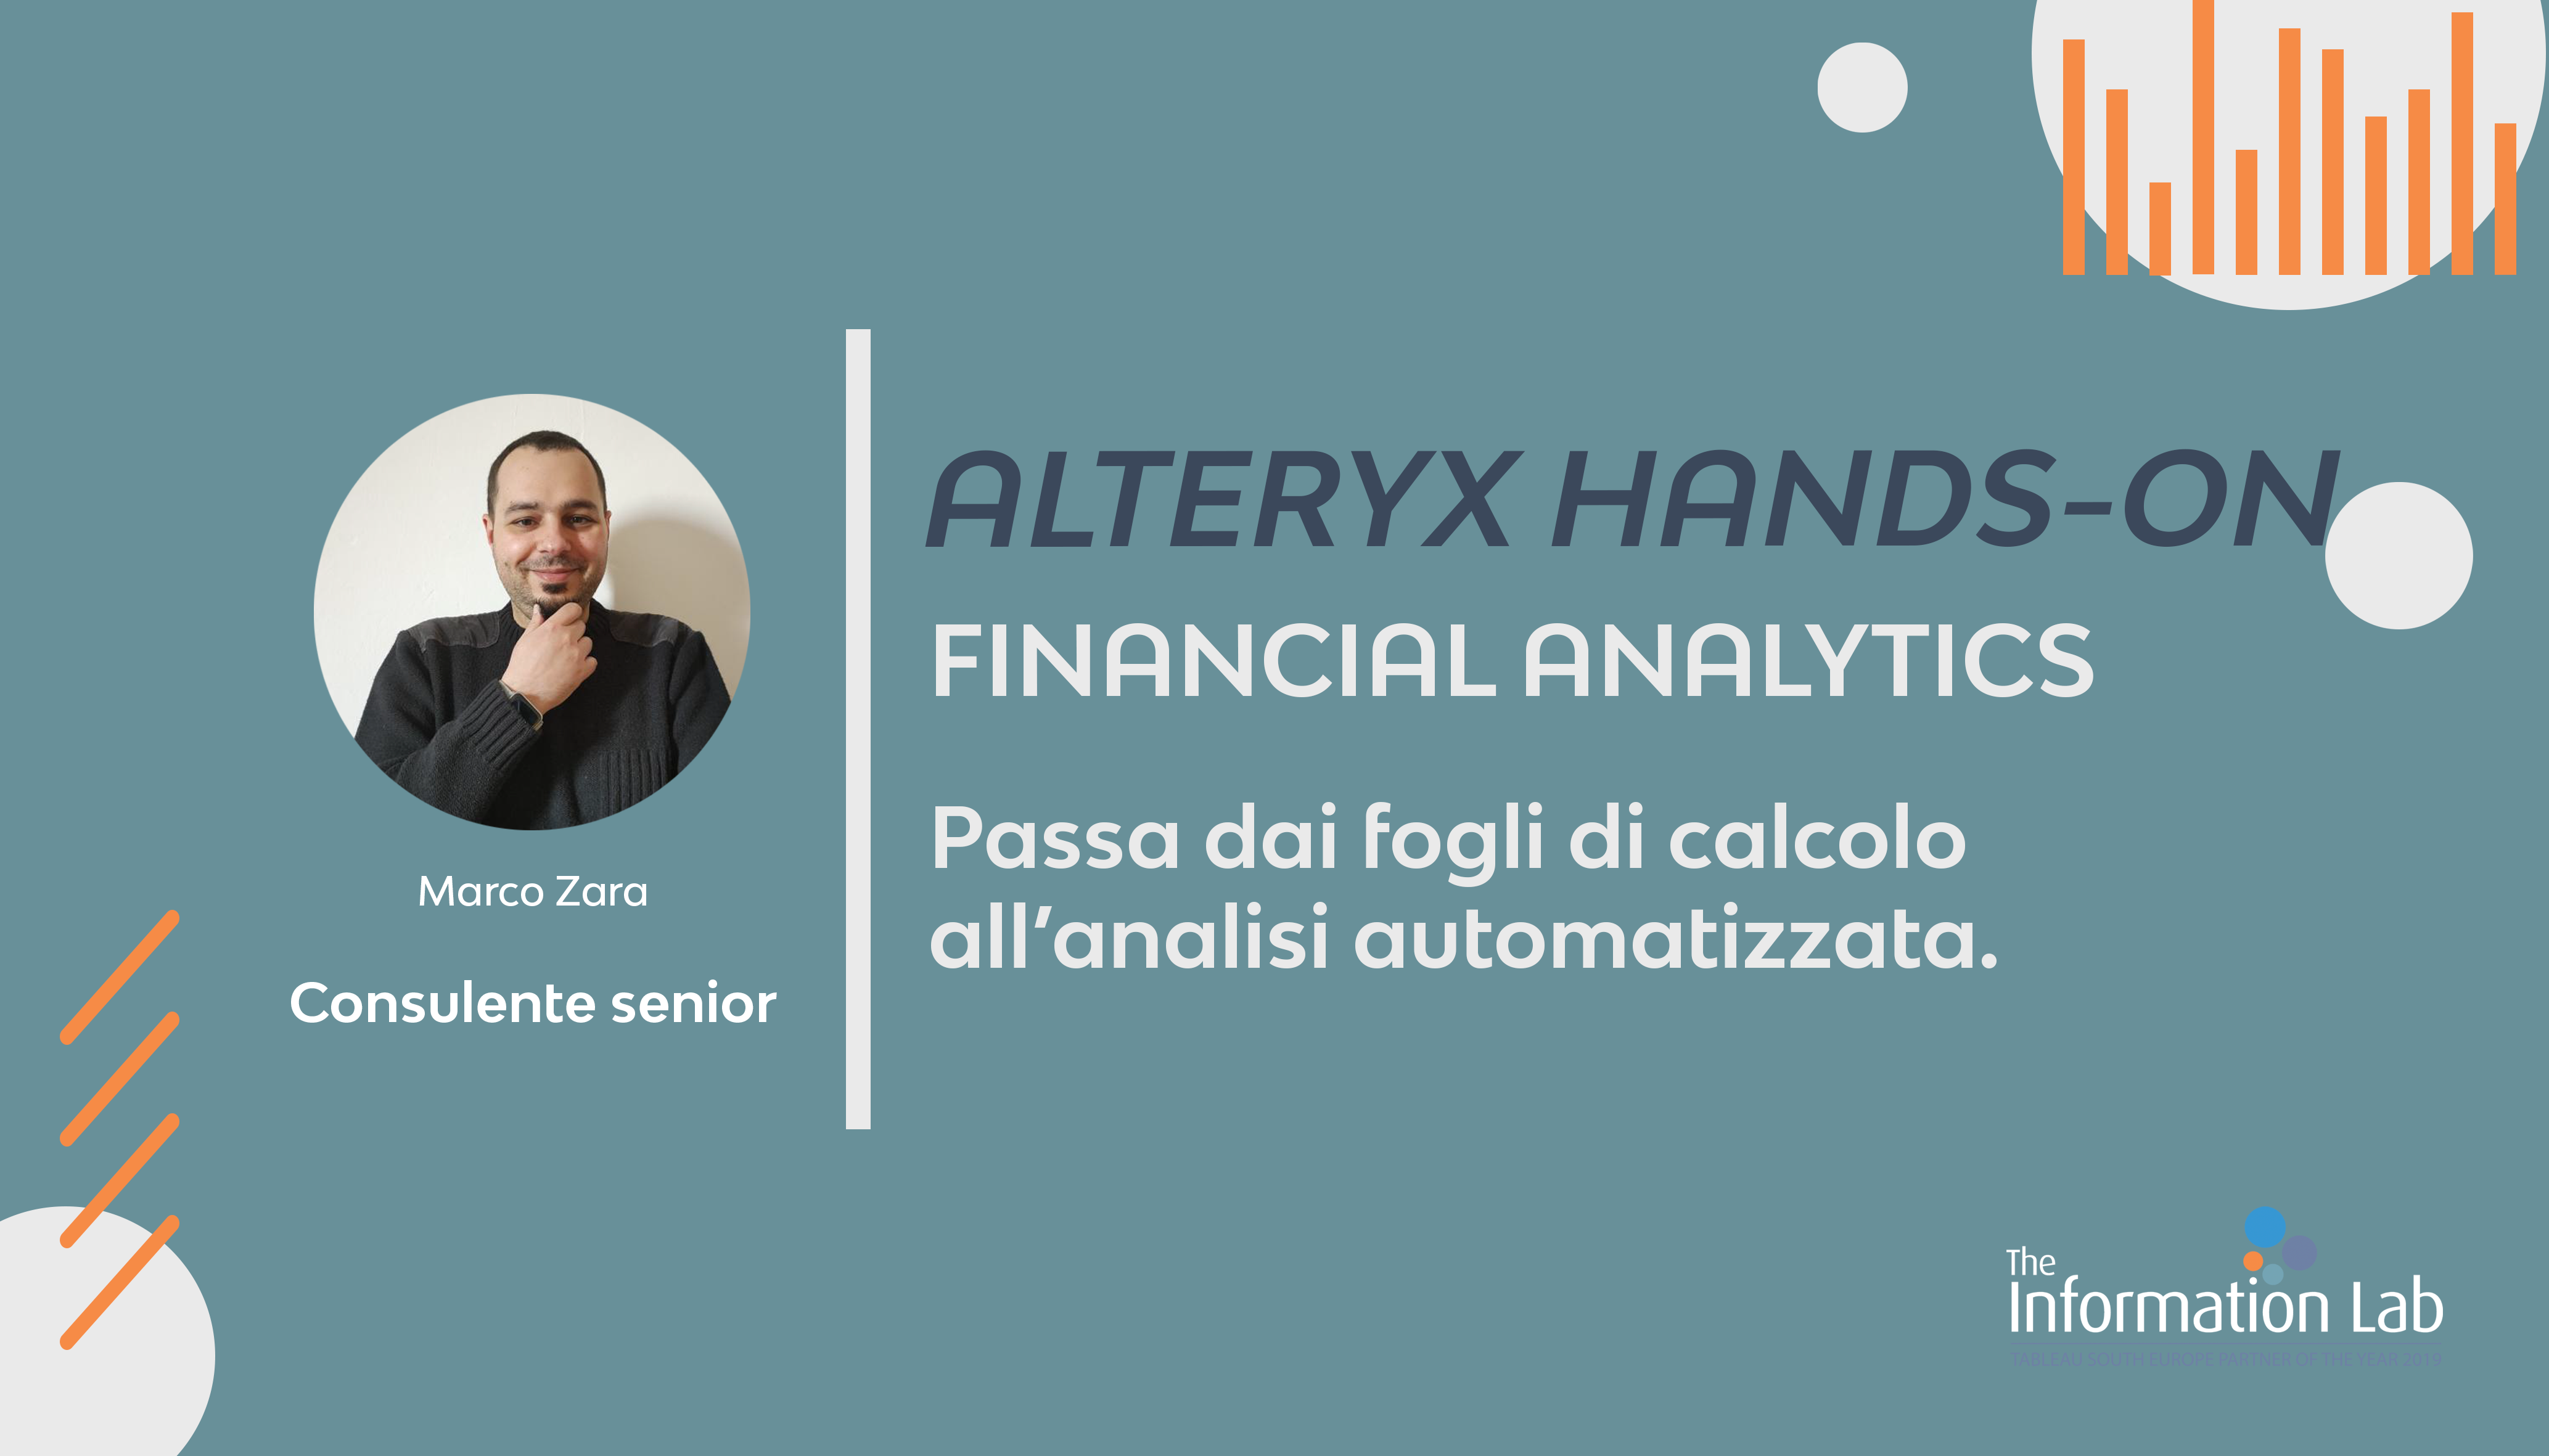 Alteryx Hands On | Financial Analytics